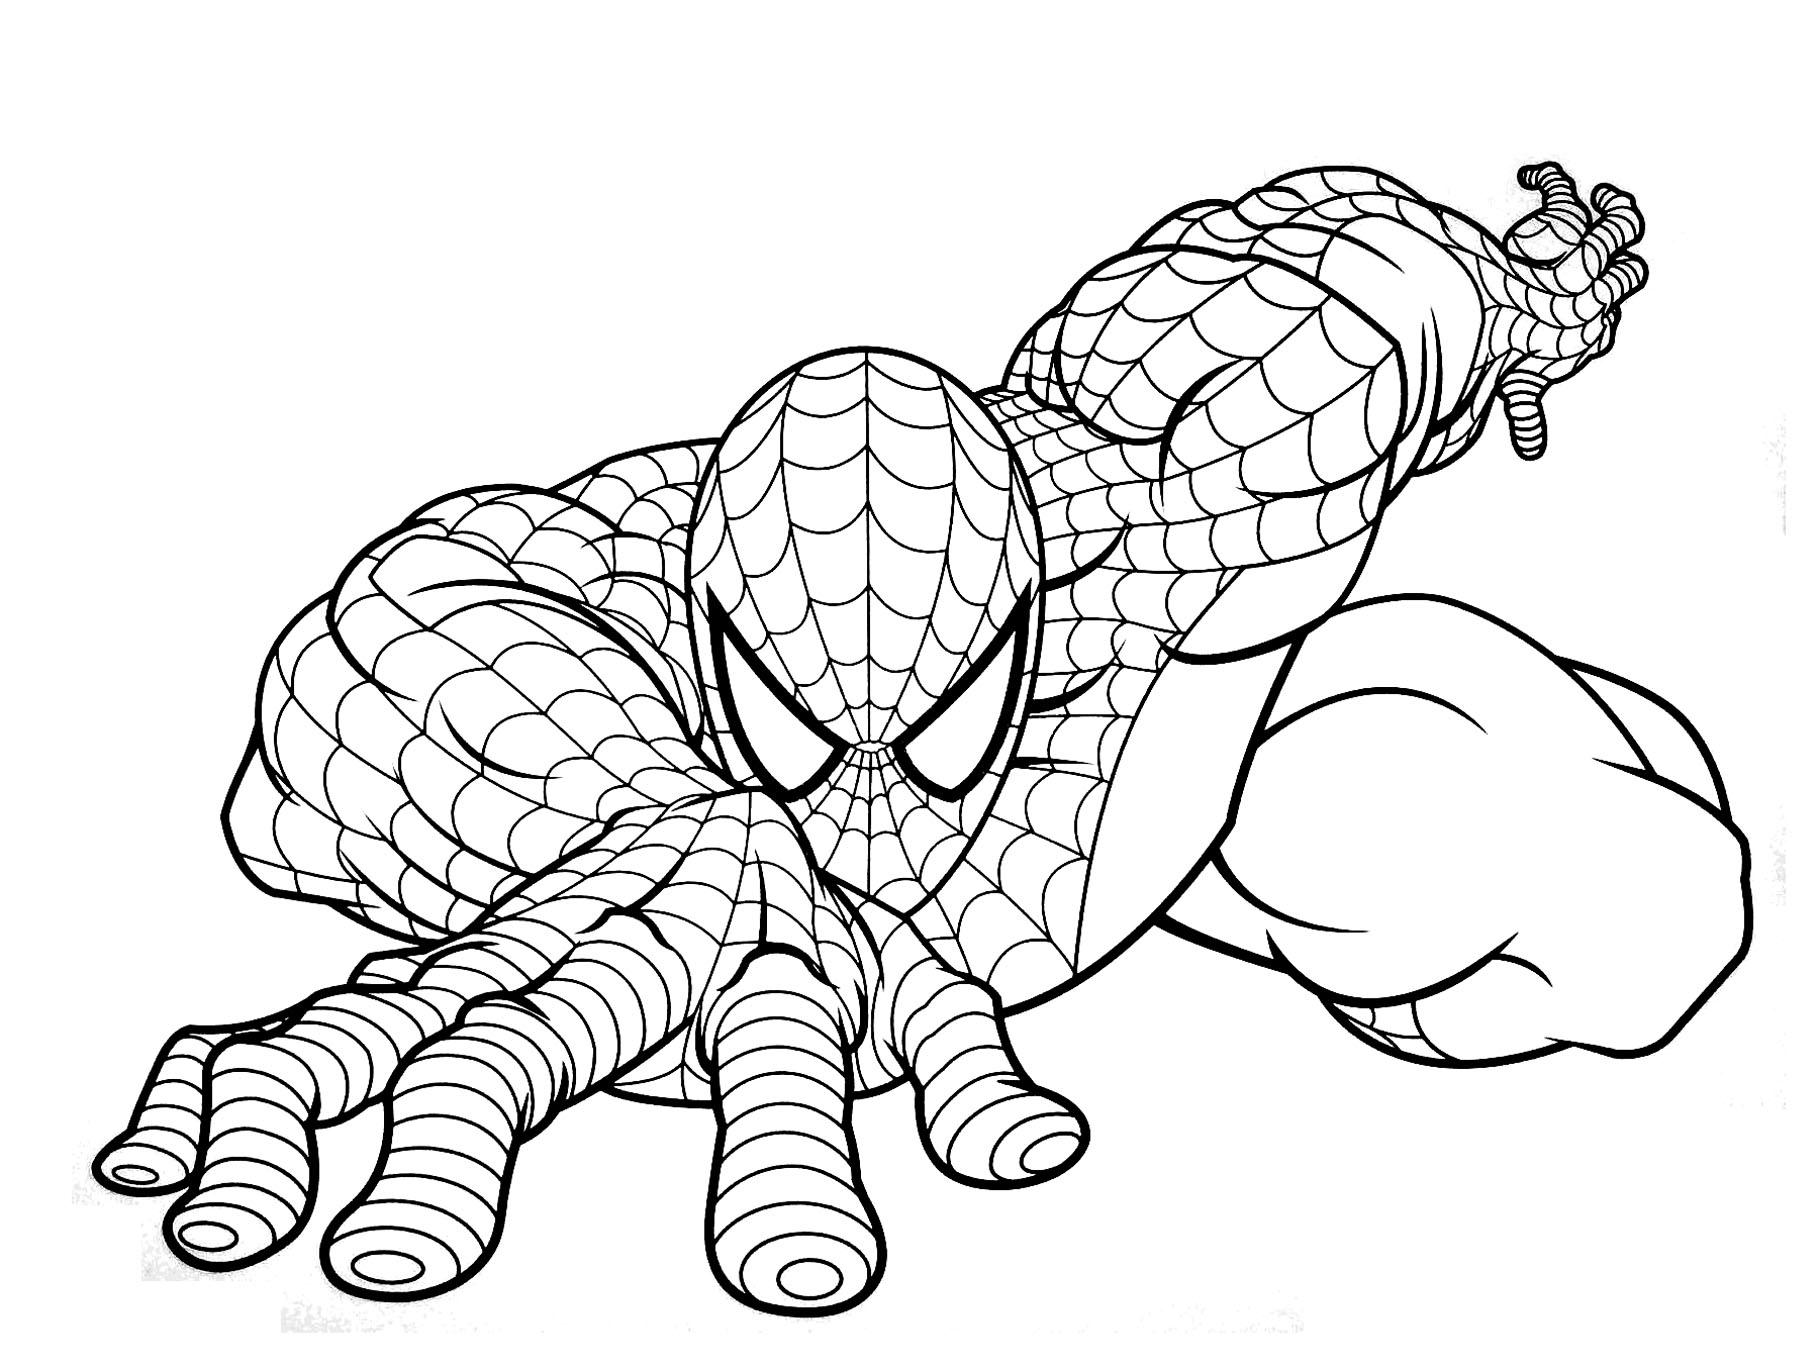 Magnifique coloriage de Spiderman